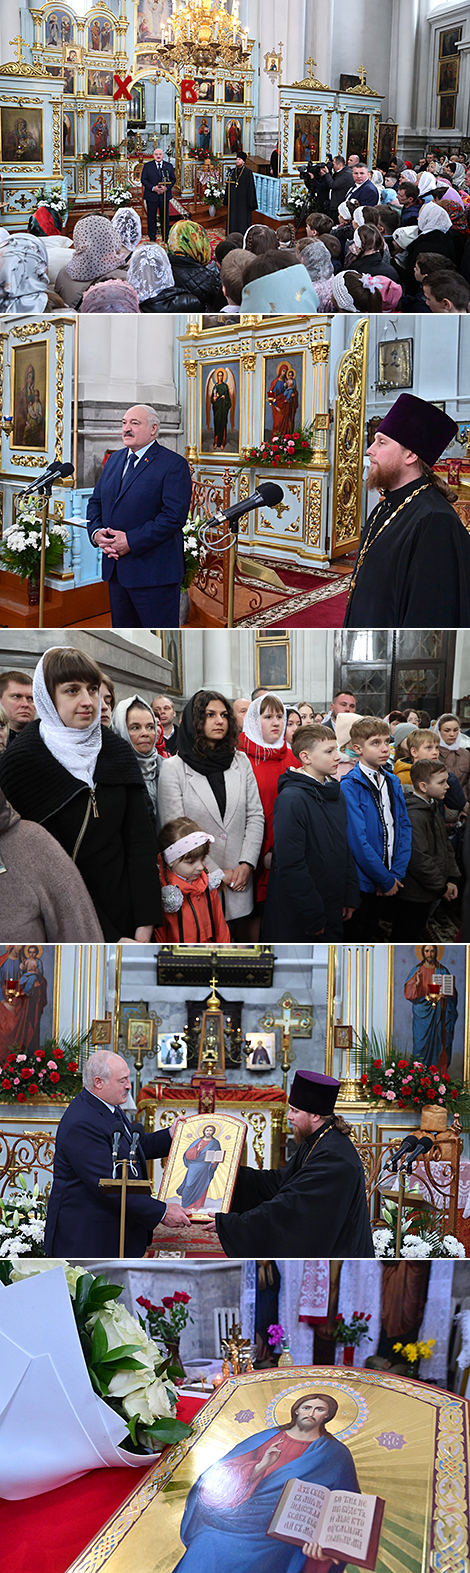 亚历山大·卢卡申科走访什克洛夫的主显容教堂